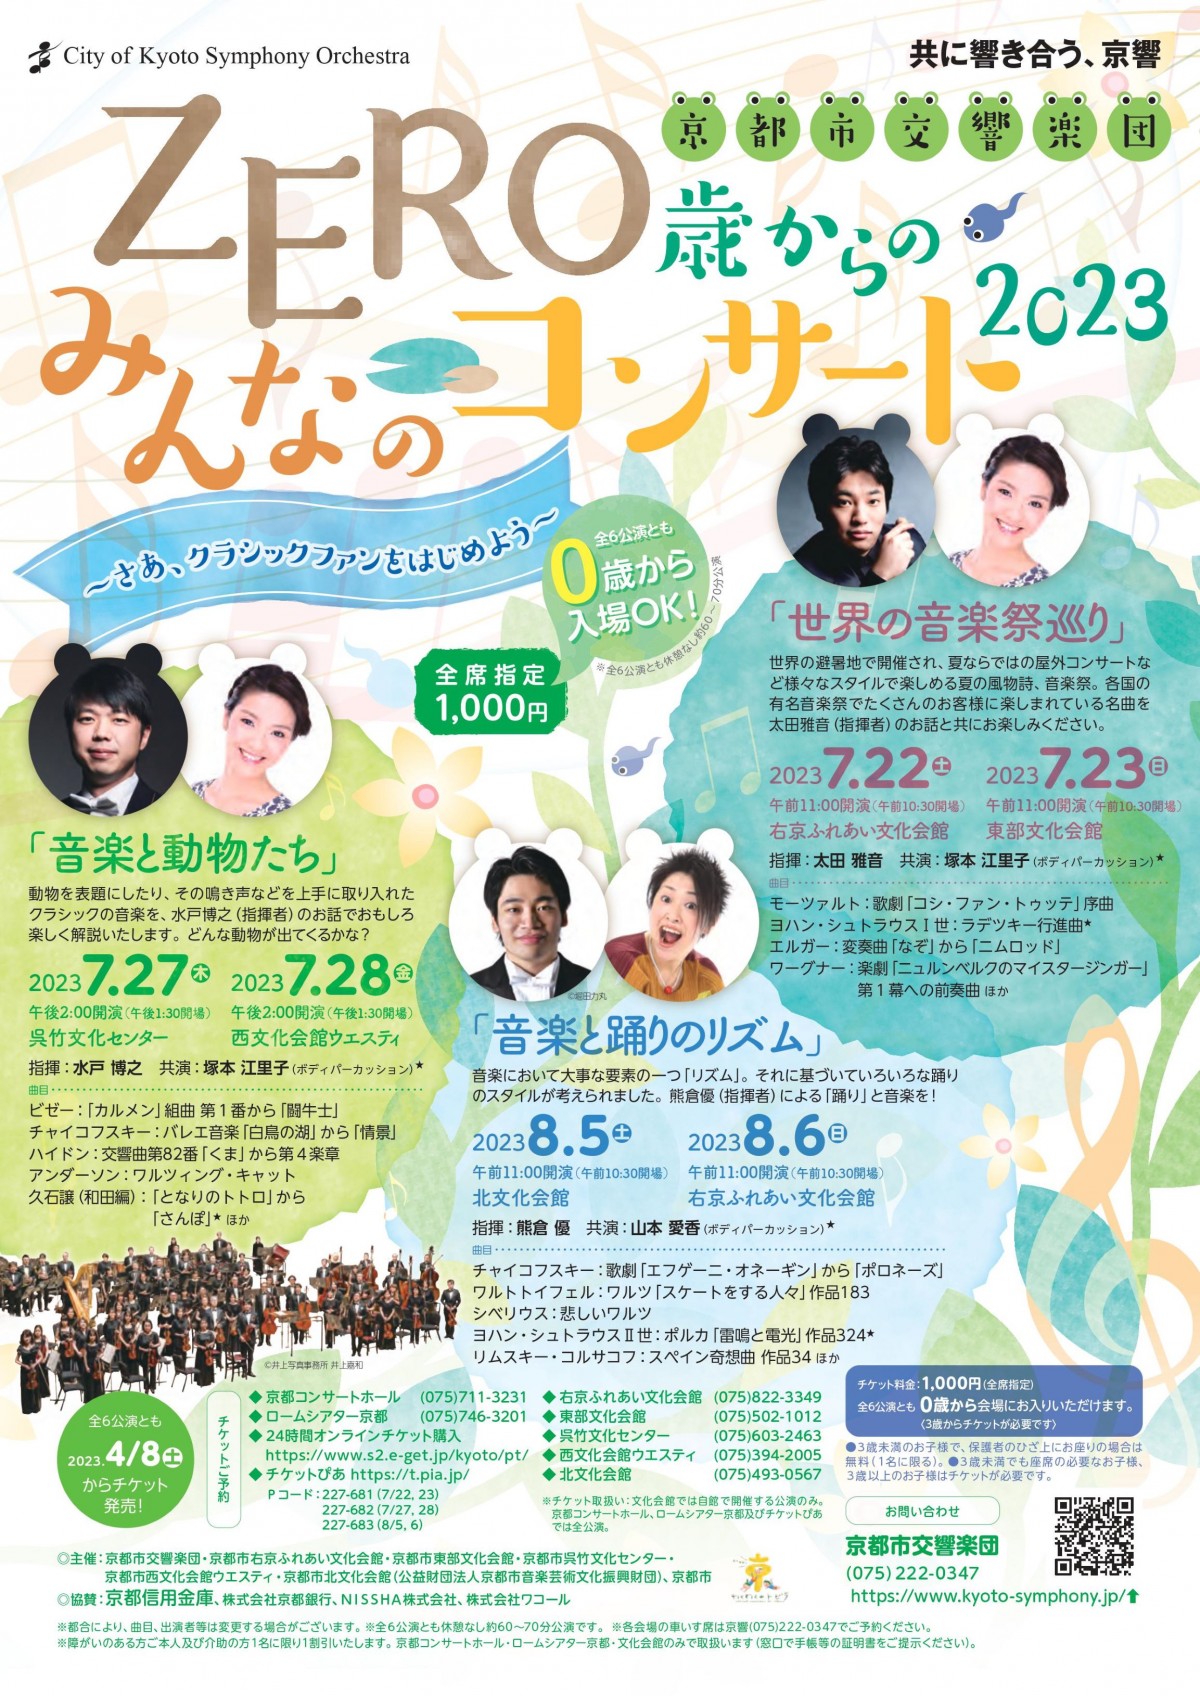 京都市交響楽団ZERO歳からのみんなのコンサート2023 「音楽と踊りのリズム」のフライヤー画像